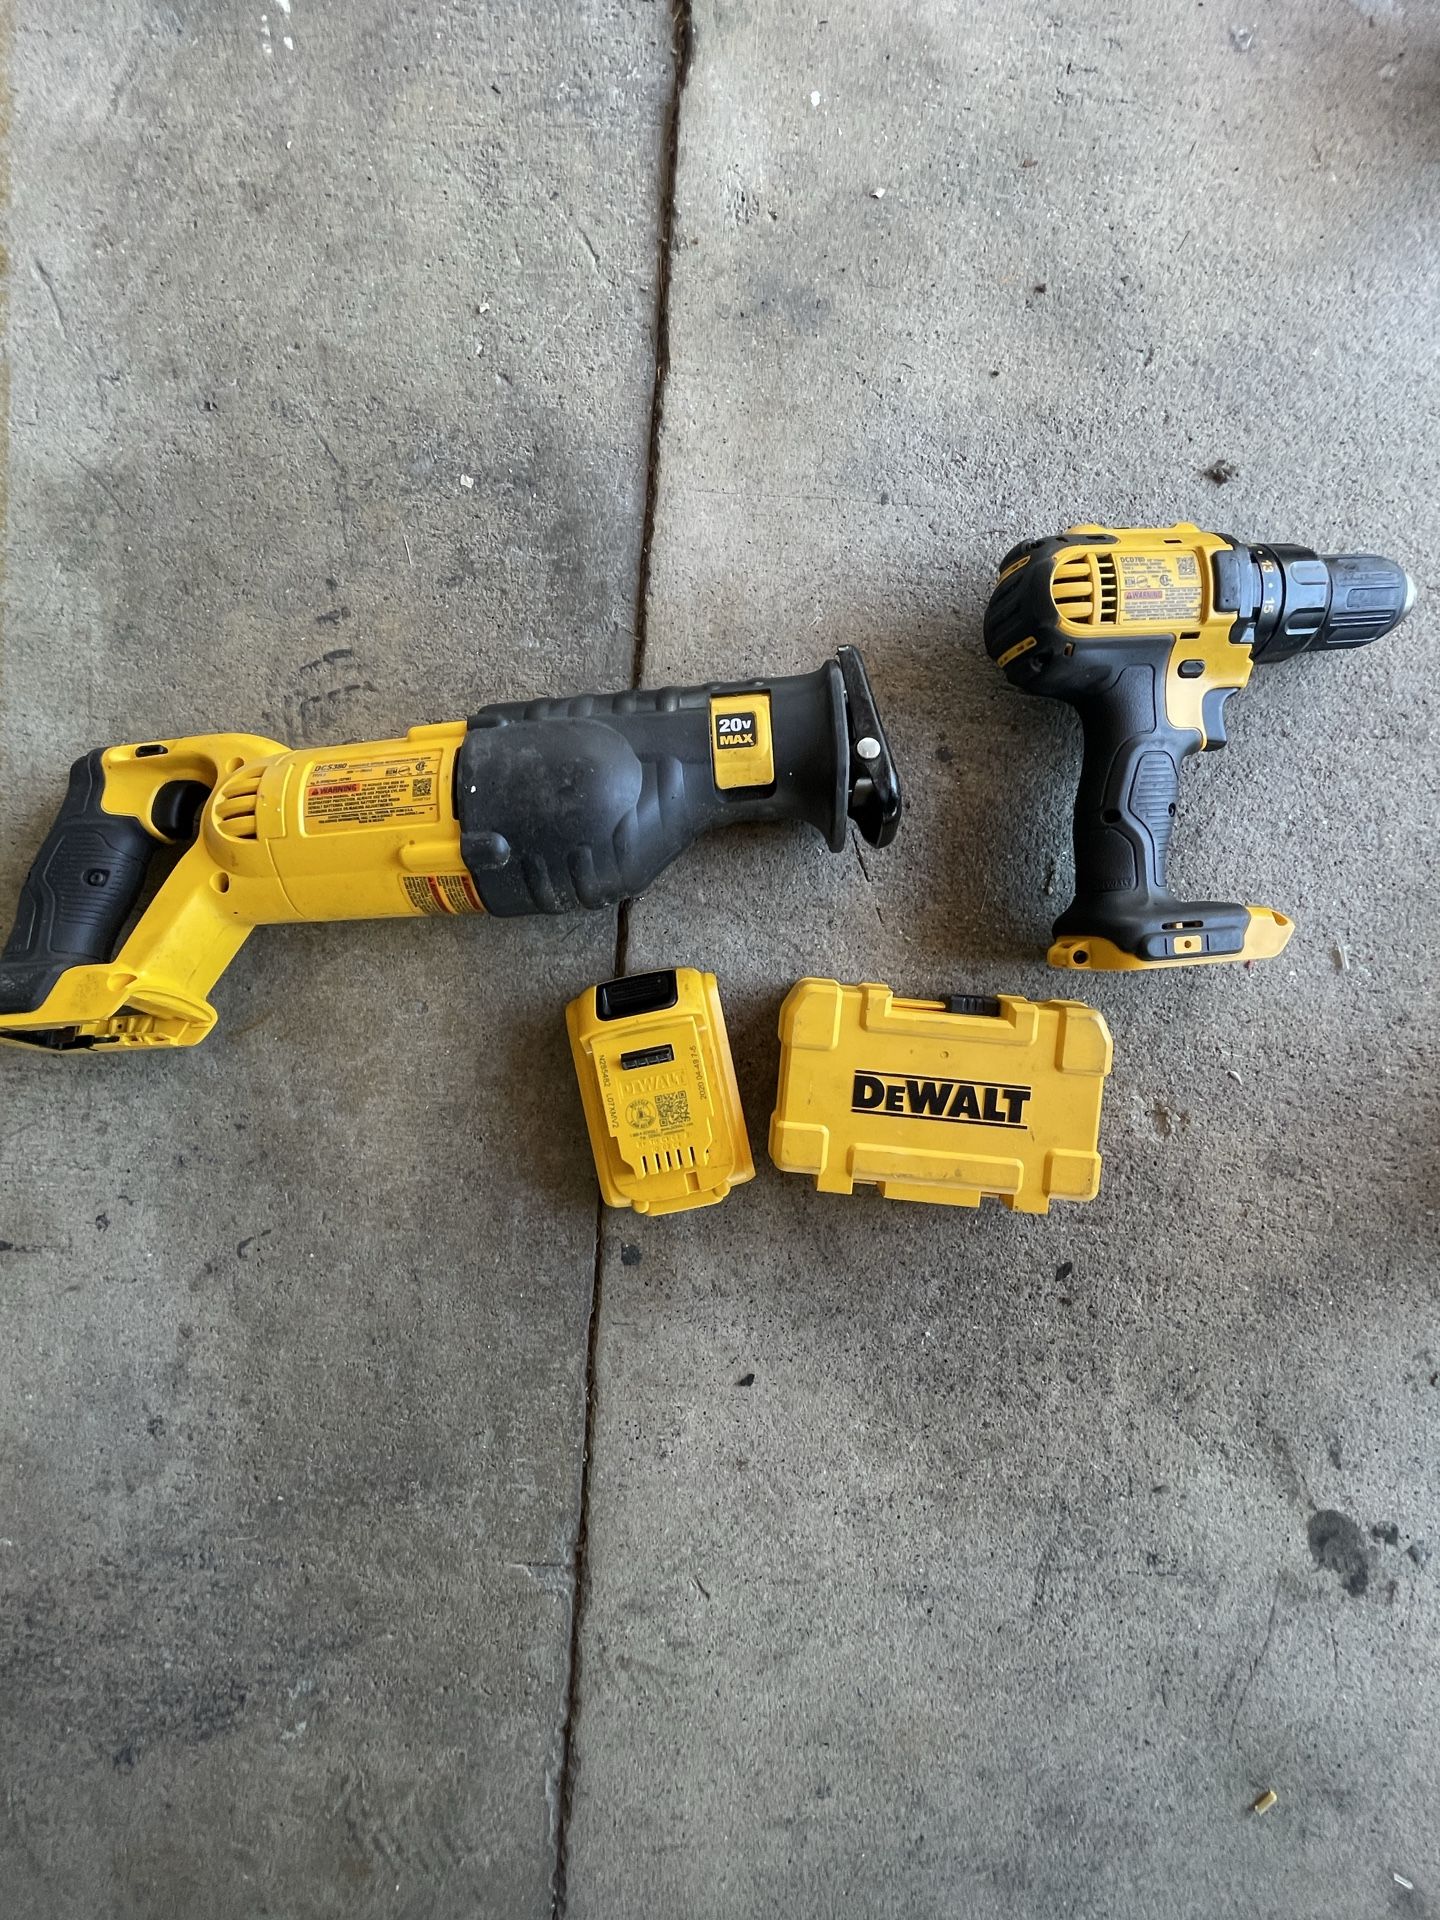 DeWalt Drill, sawzall (reciprocating Saw) Plus Drill Bits, Saw Blades And Battery